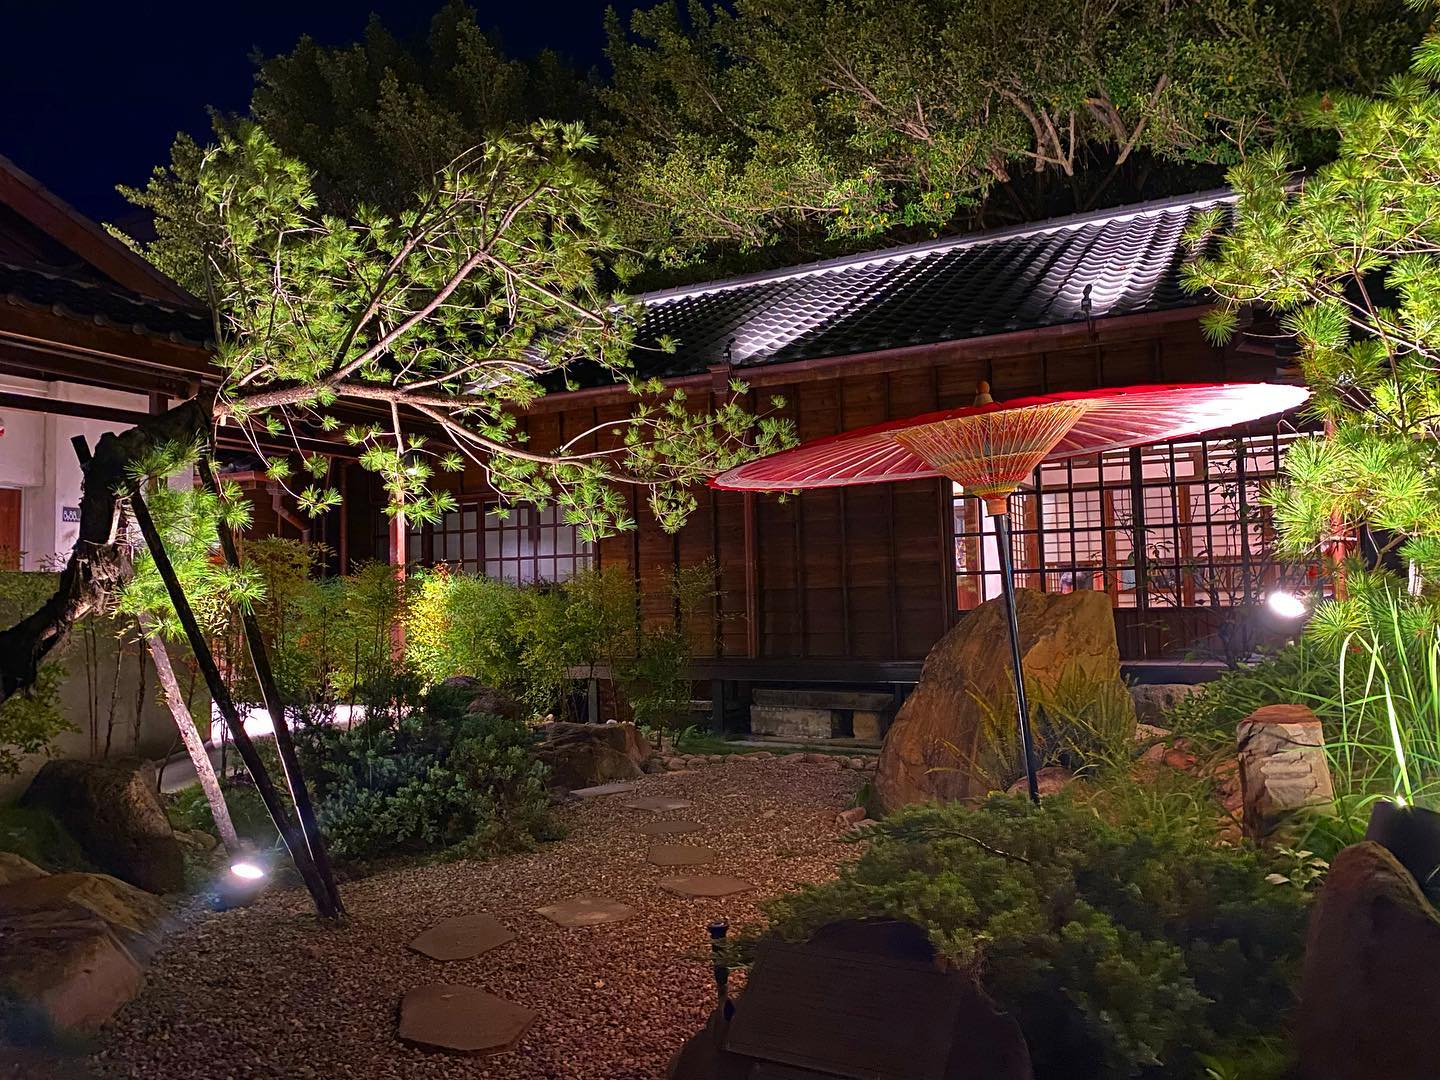 「京町 山本屋」茶屋後面的小徑更是打造出京都風庭院